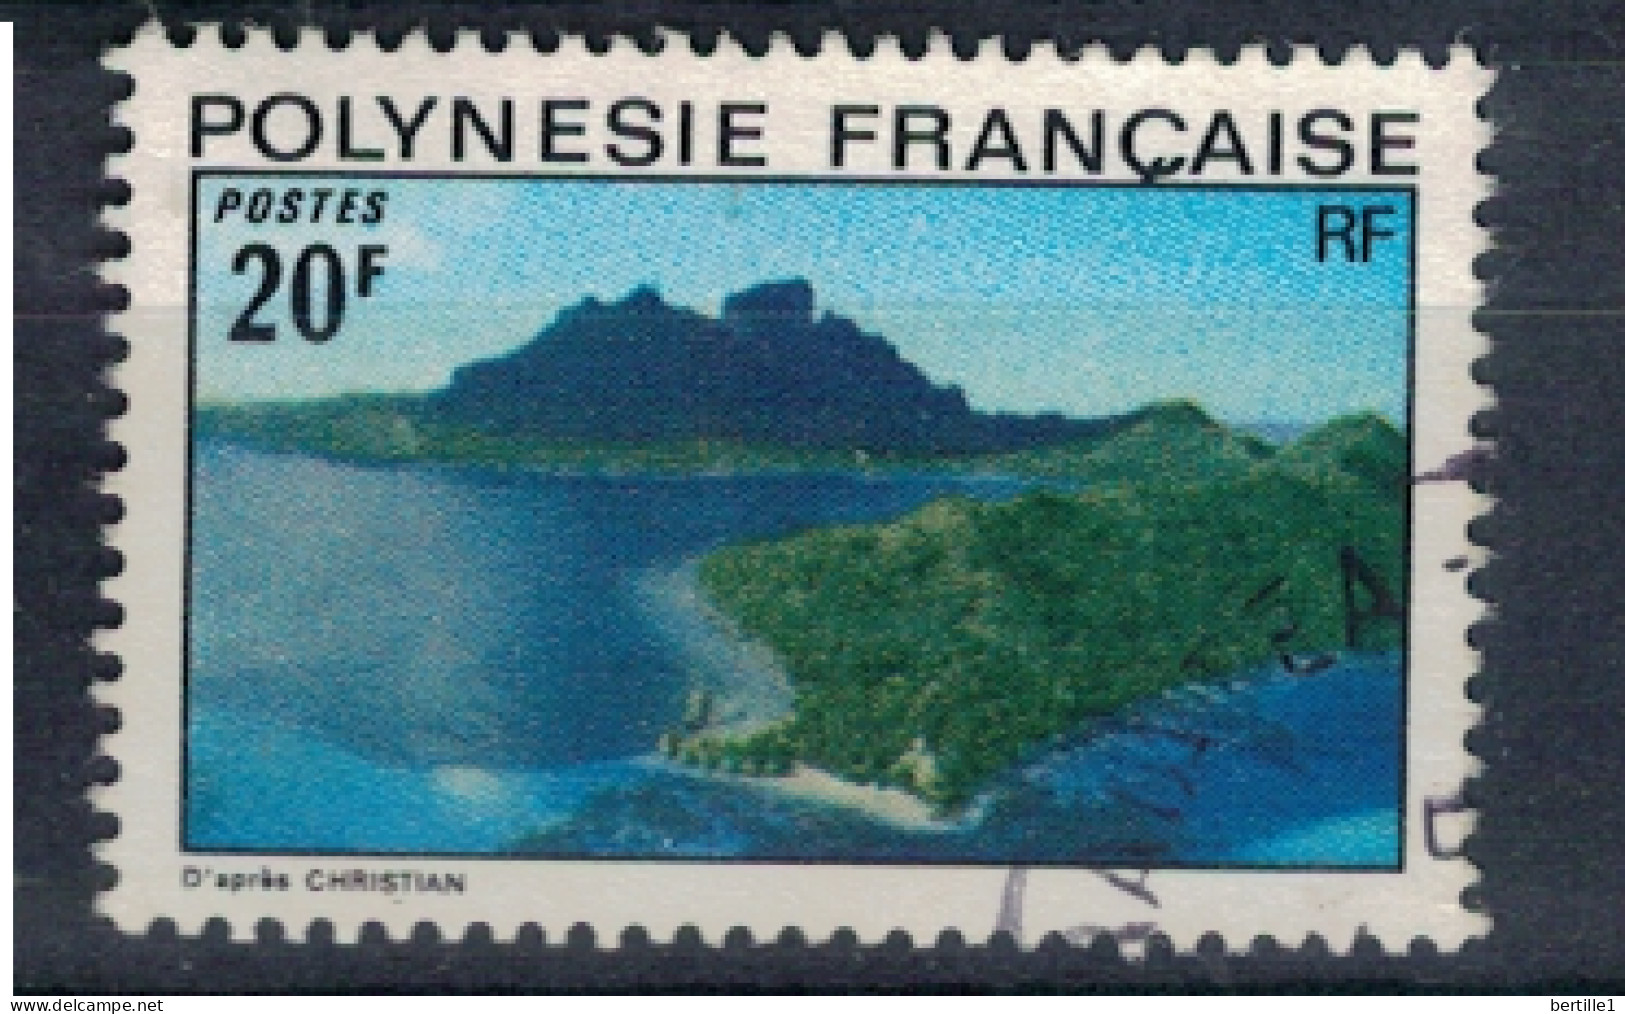 POLYNESIE FRANCAISE             N°  YVERT  102  ( 14 )  OBLITERE    ( OB 11/ 32 ) - Oblitérés